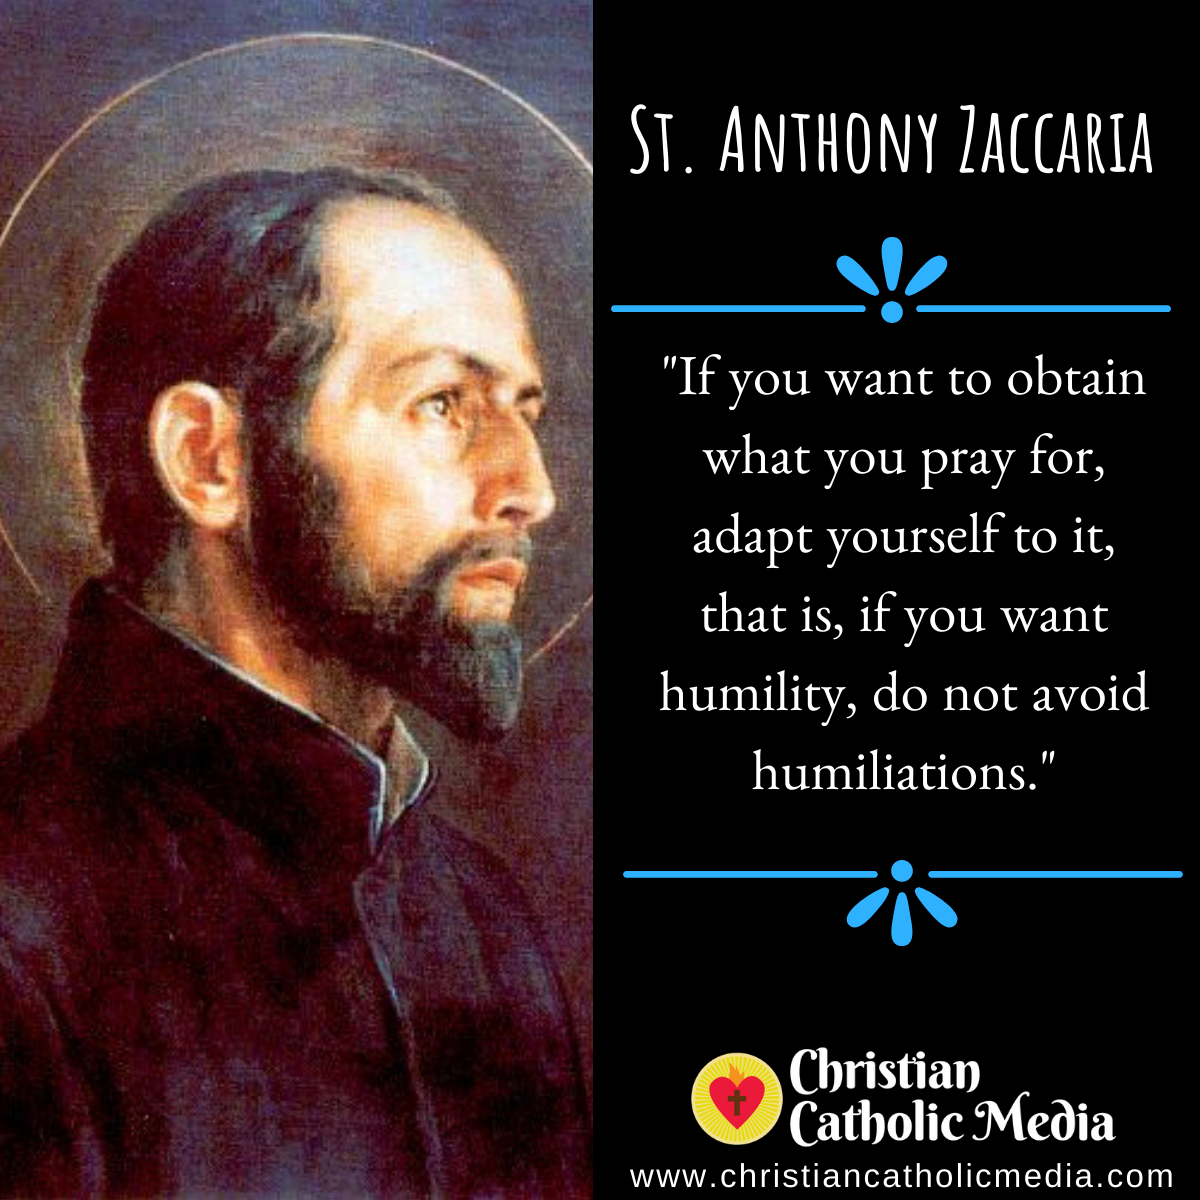 St. Anthony Zaccaria - Sunday July 5, 2020